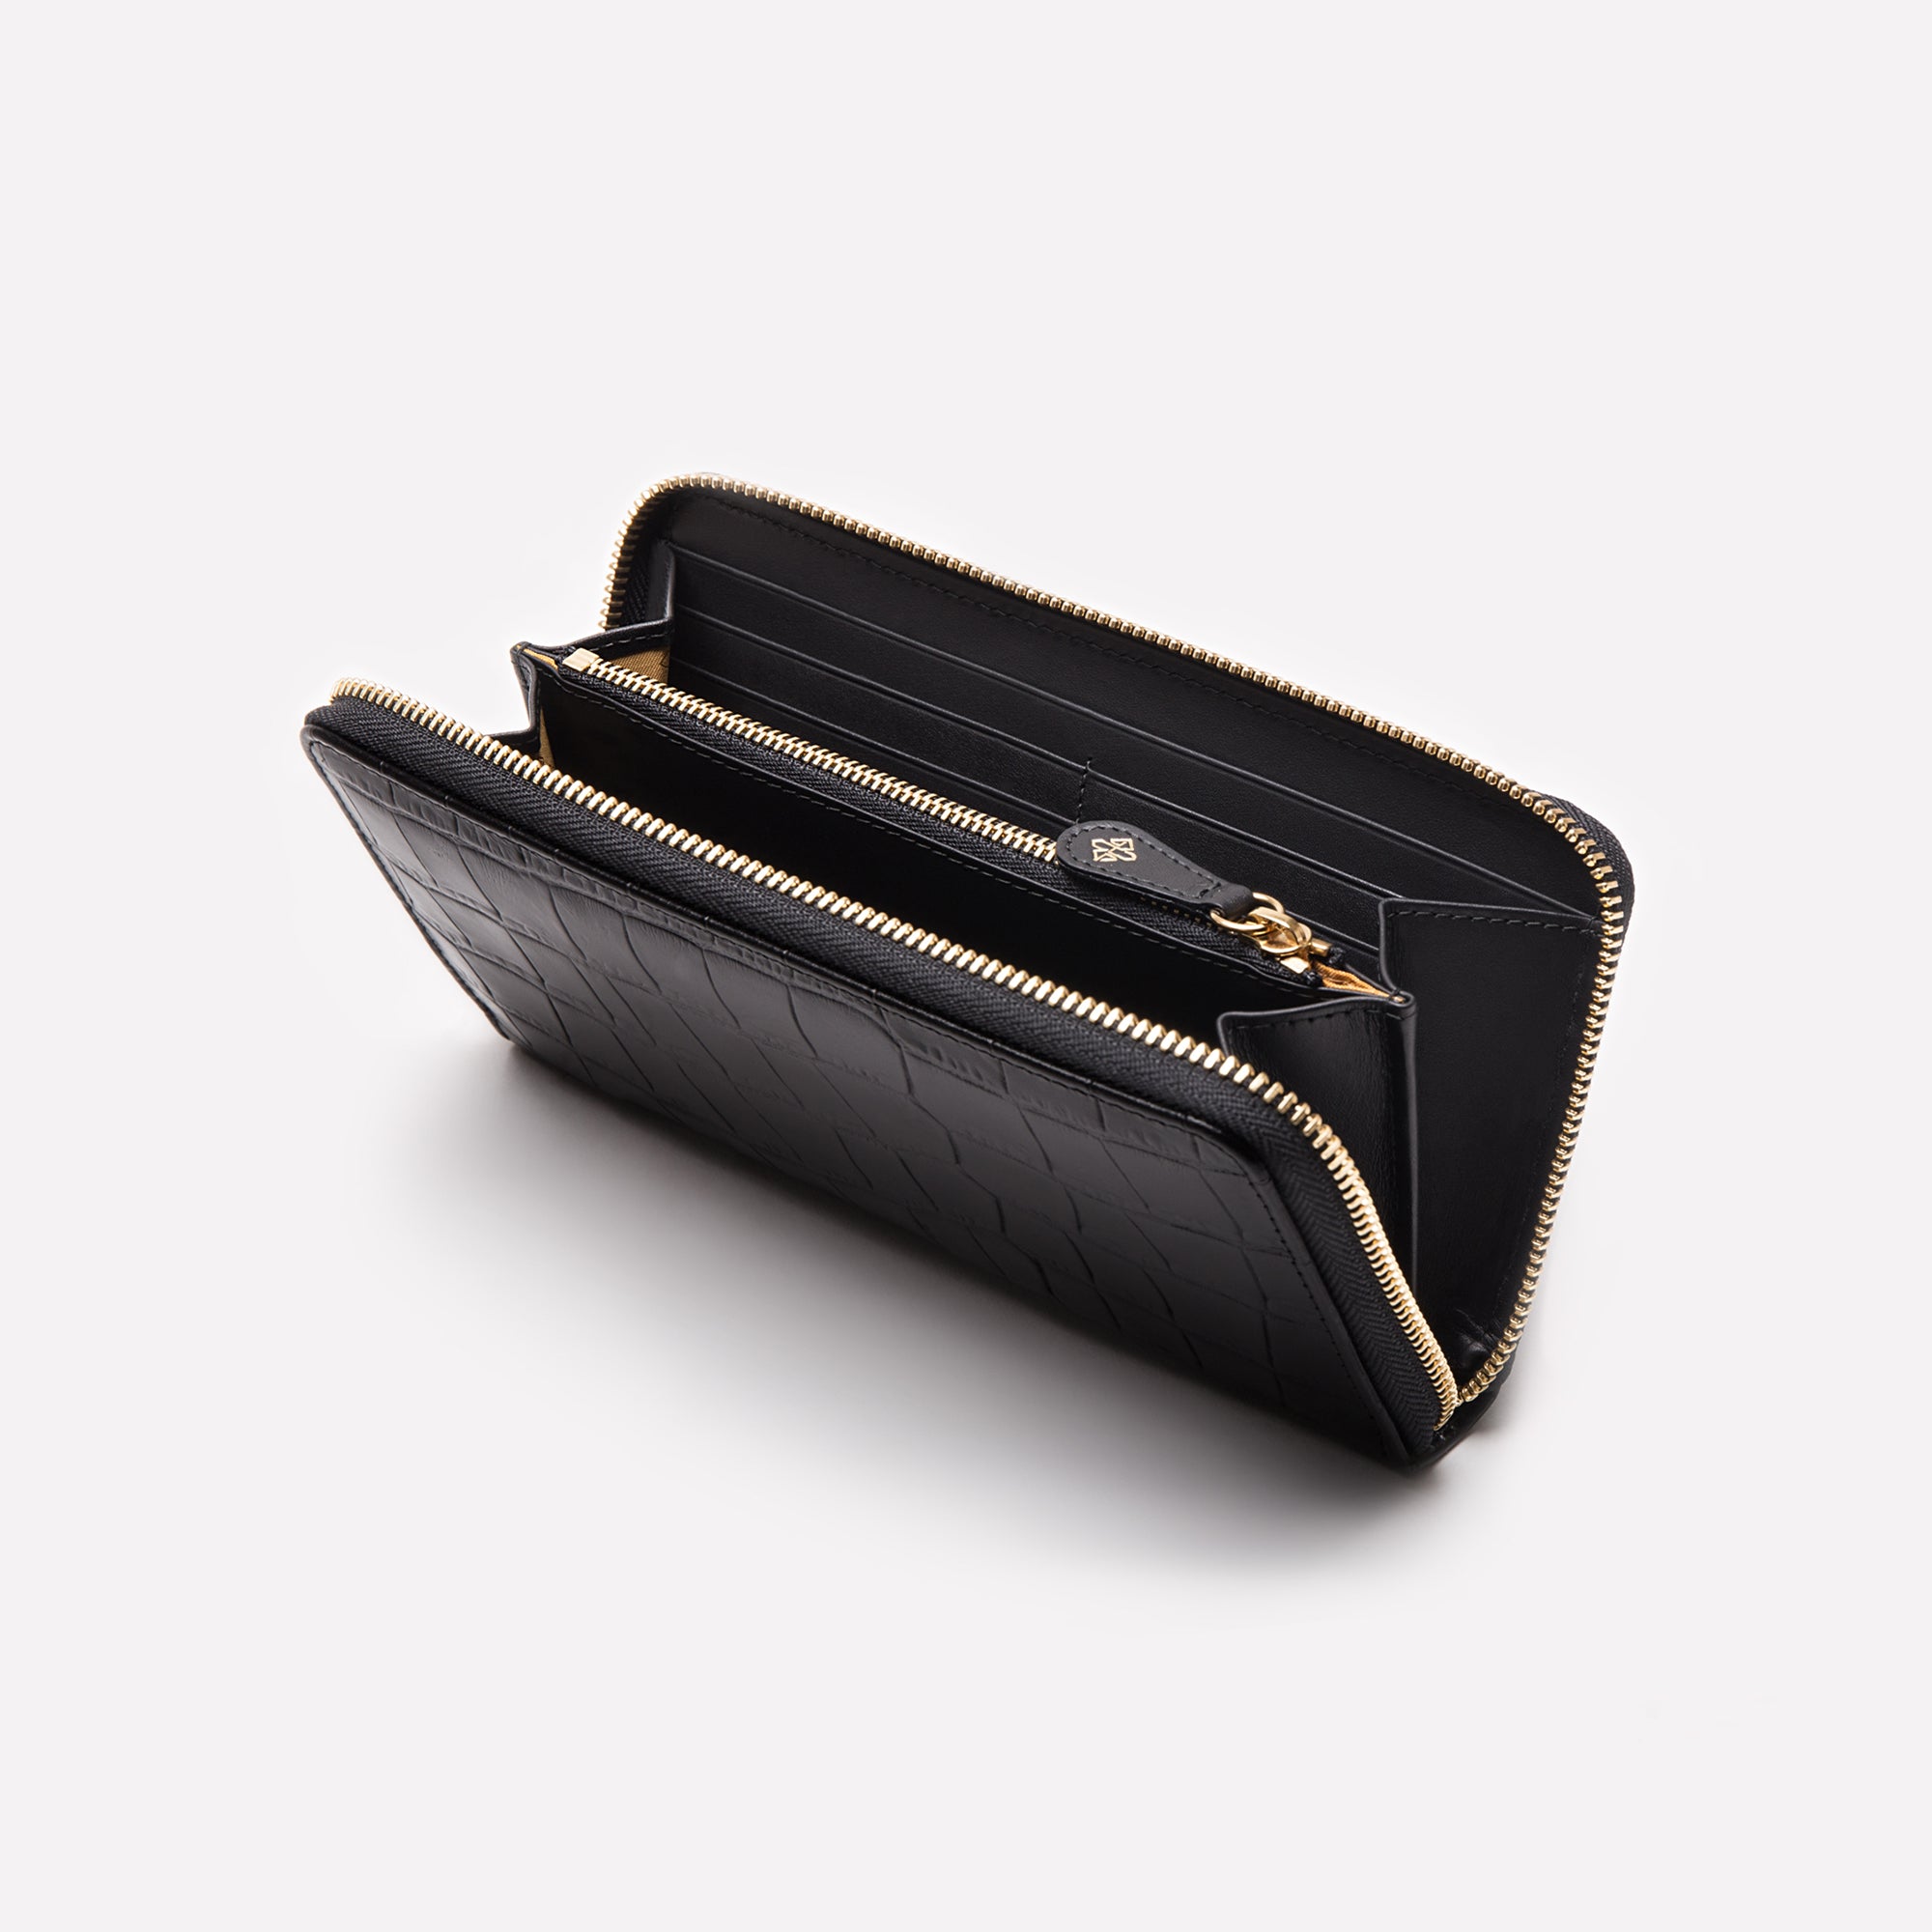 Handbag Bliss Ladies Womens Vera Pelle Medium/Large Leather Purse Wallet